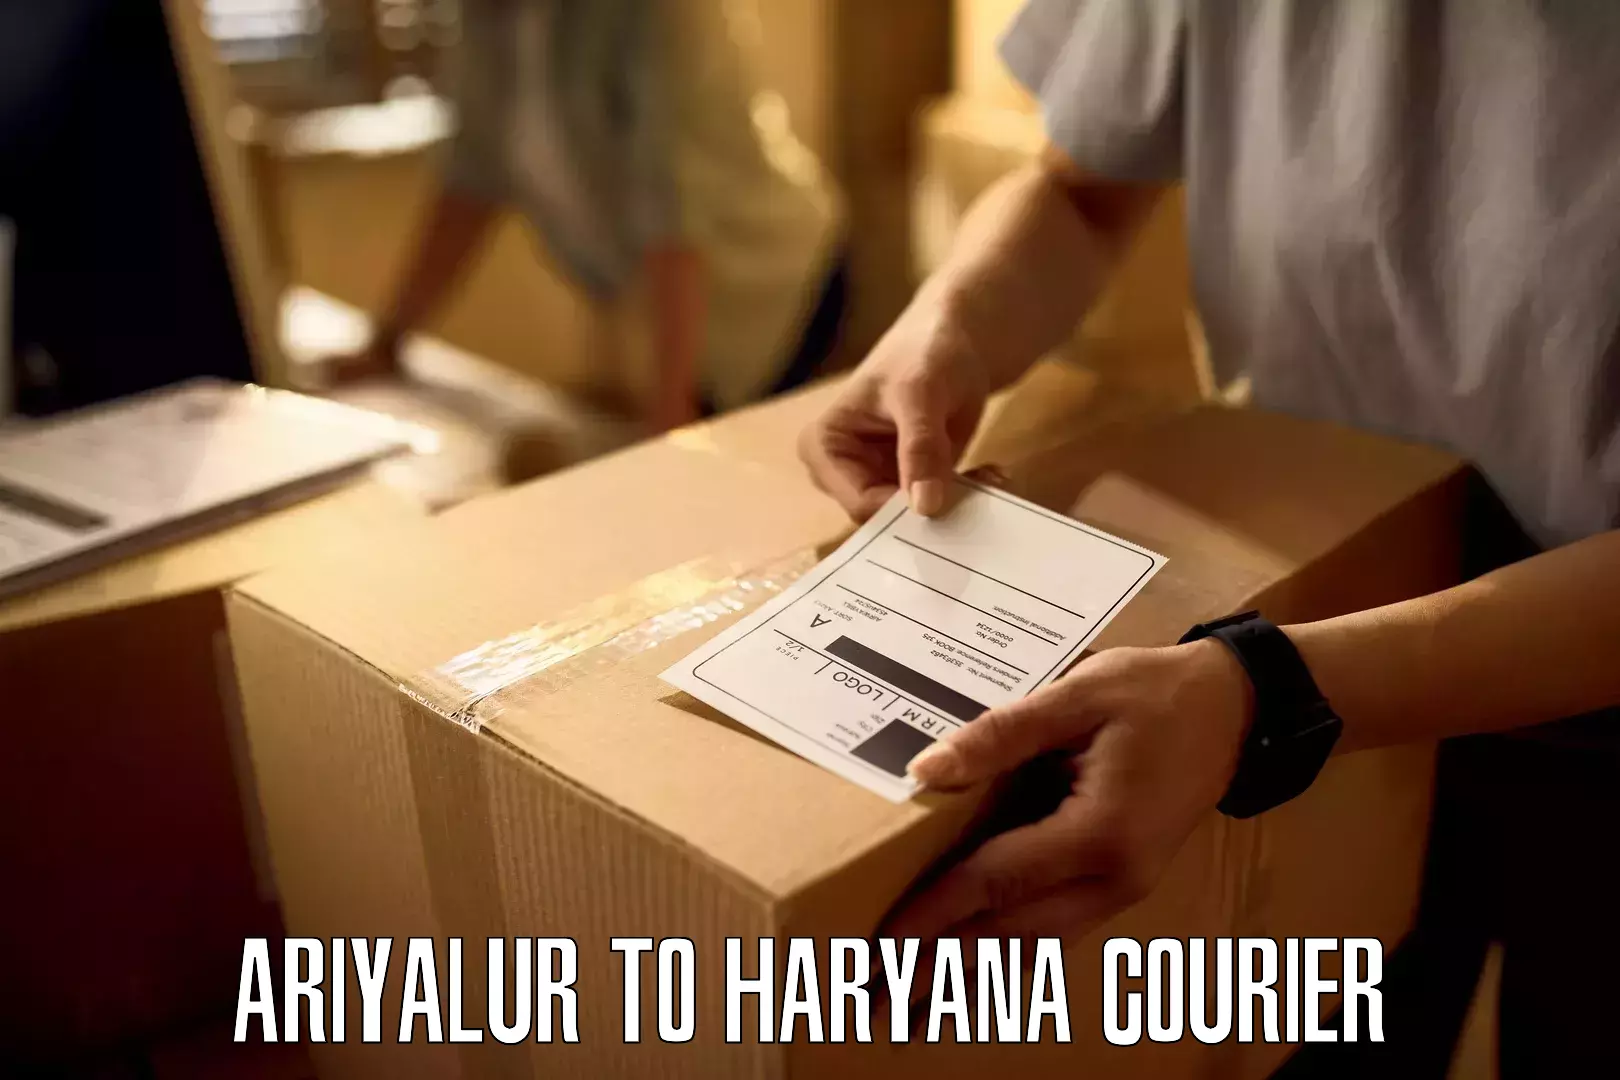 Door-to-door freight service Ariyalur to Haryana